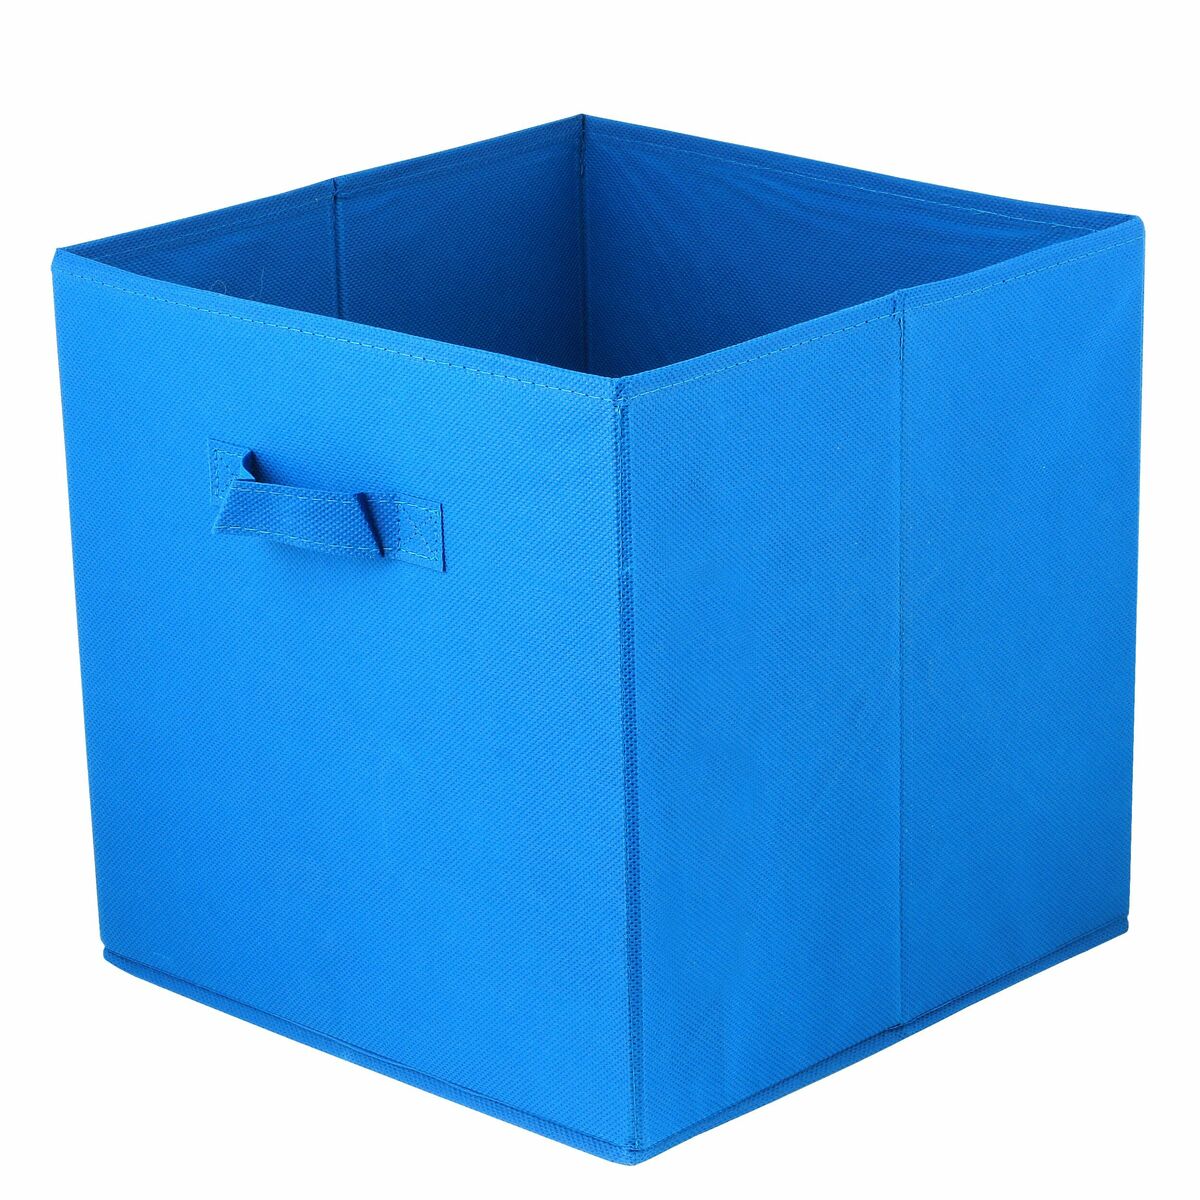 Pudełko tekstylne Kub 31 x 31 x 31 cm ciemnoniebieskie